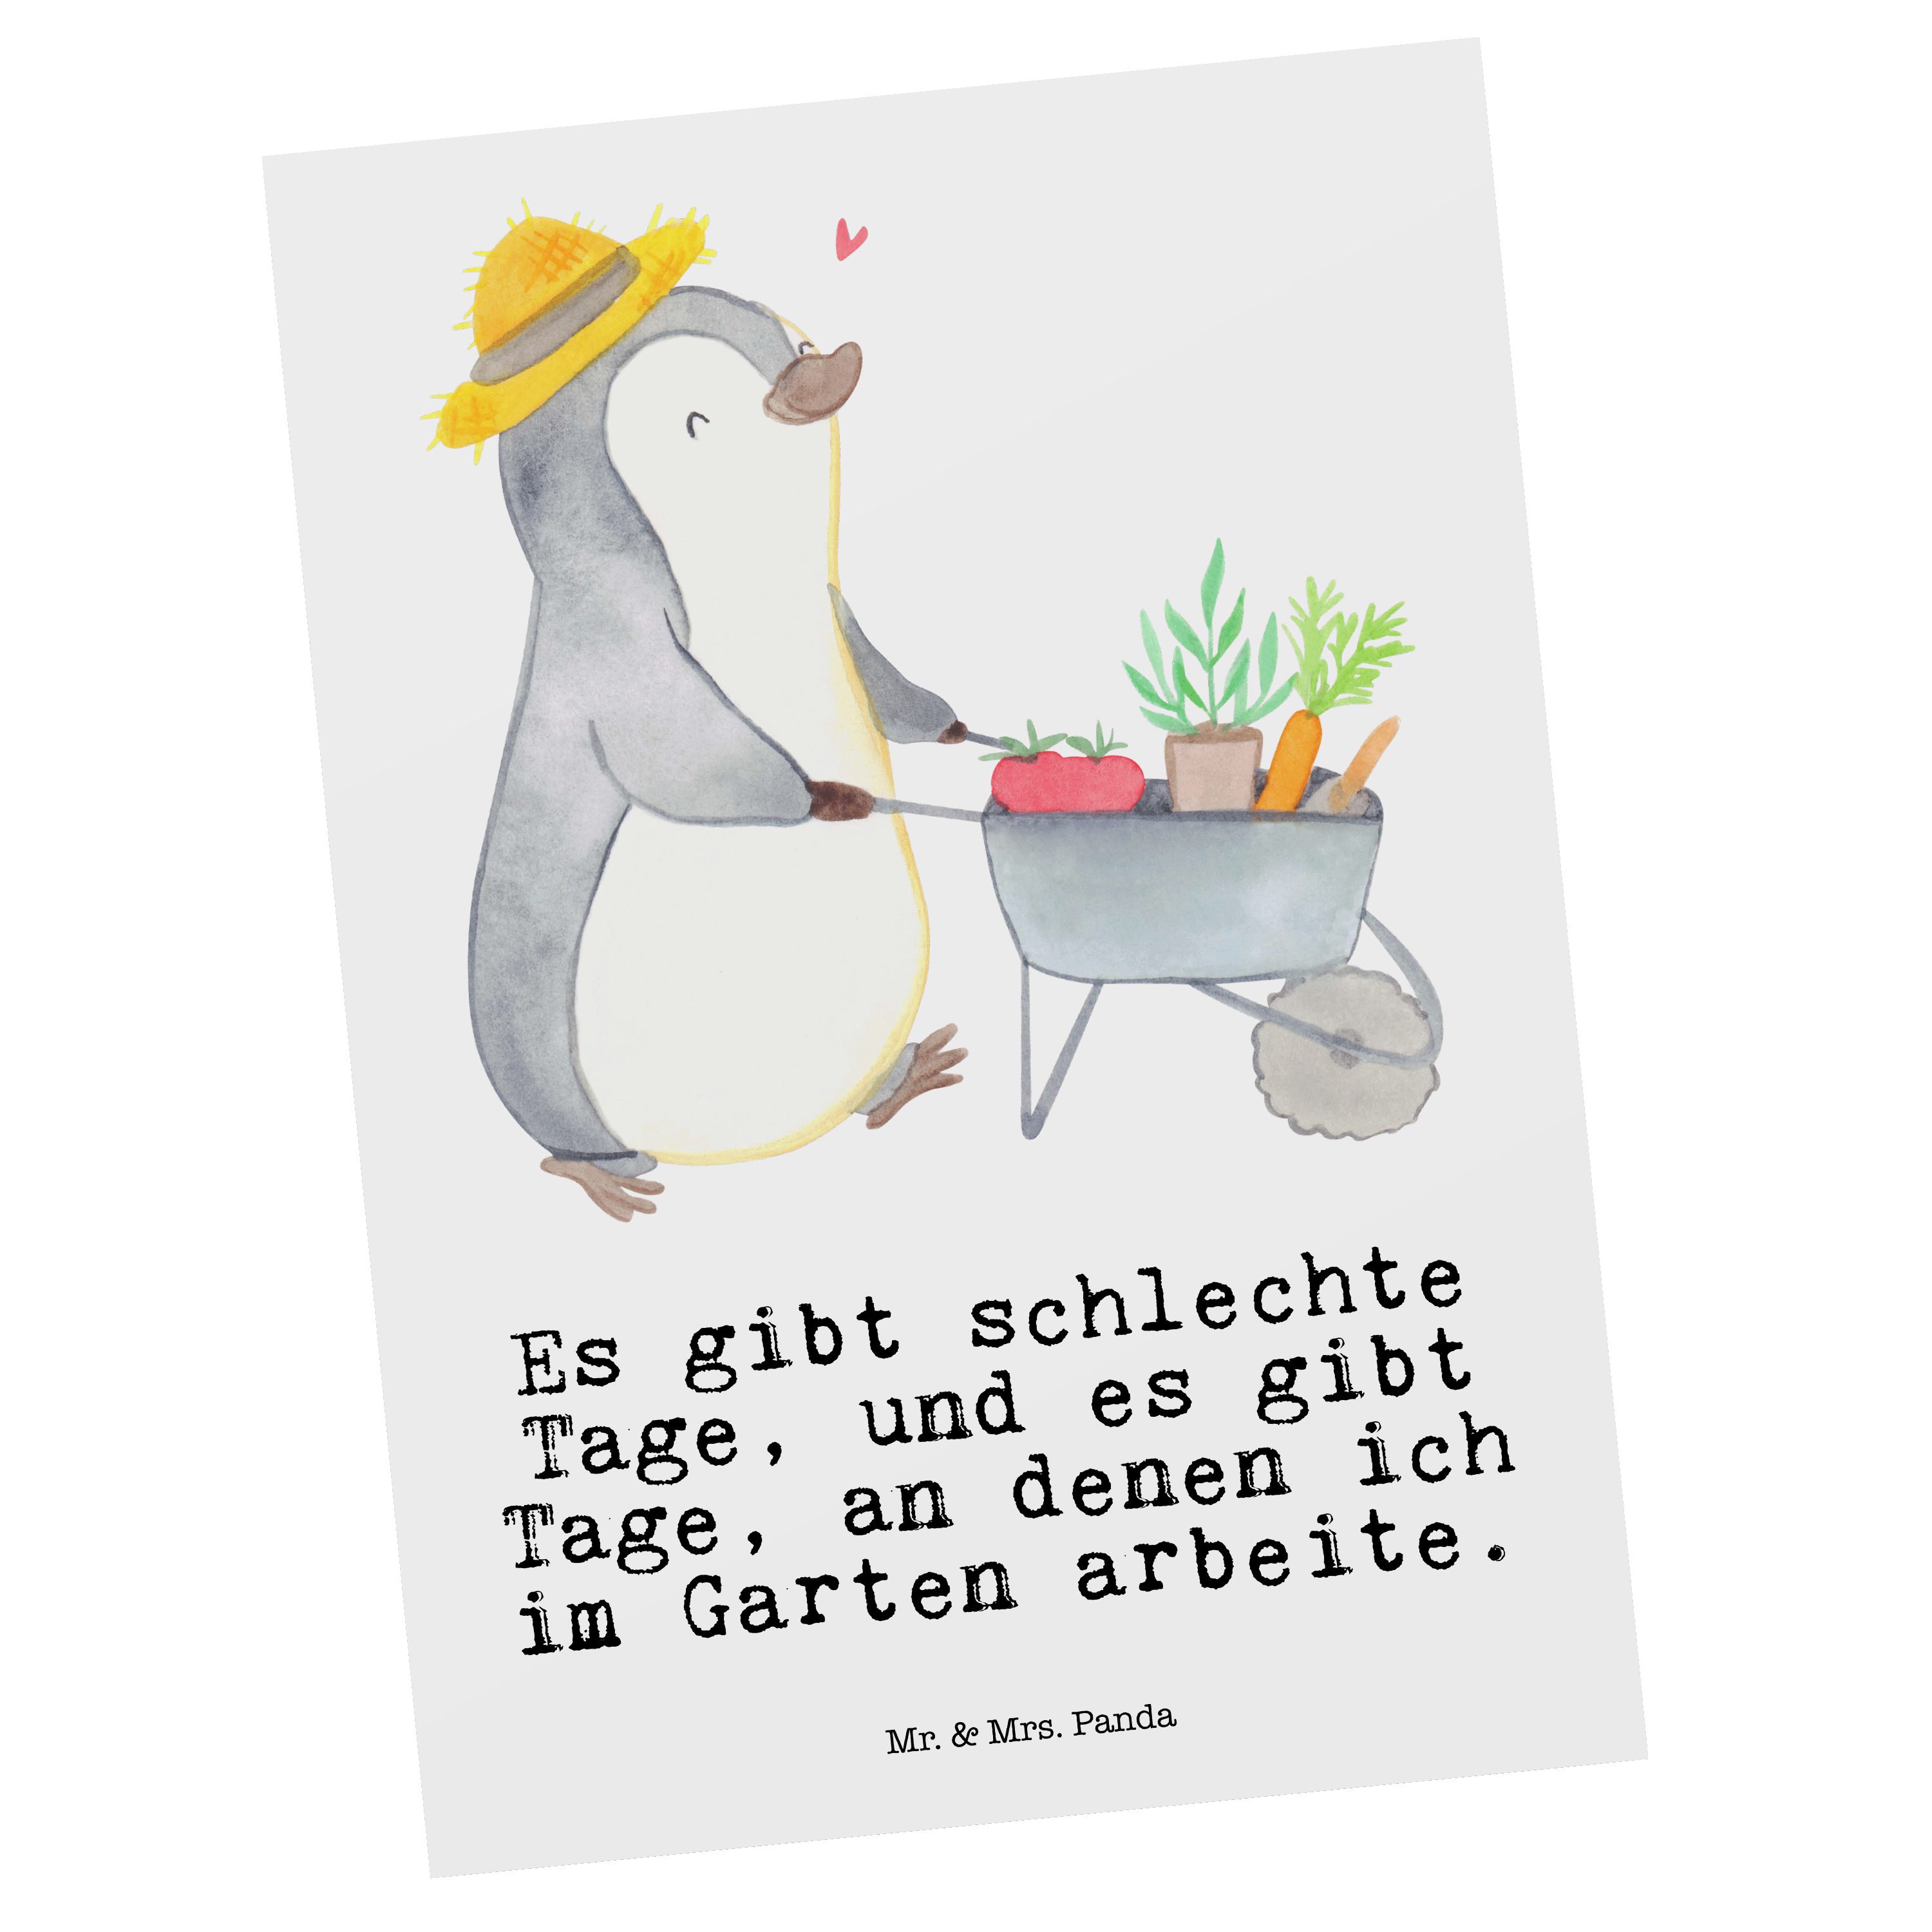 Mr. & Mrs. - Panda Geburtstagskarte, Postkarte Gartenarbeit Tage Weiß Pinguin Grußka Geschenk, 